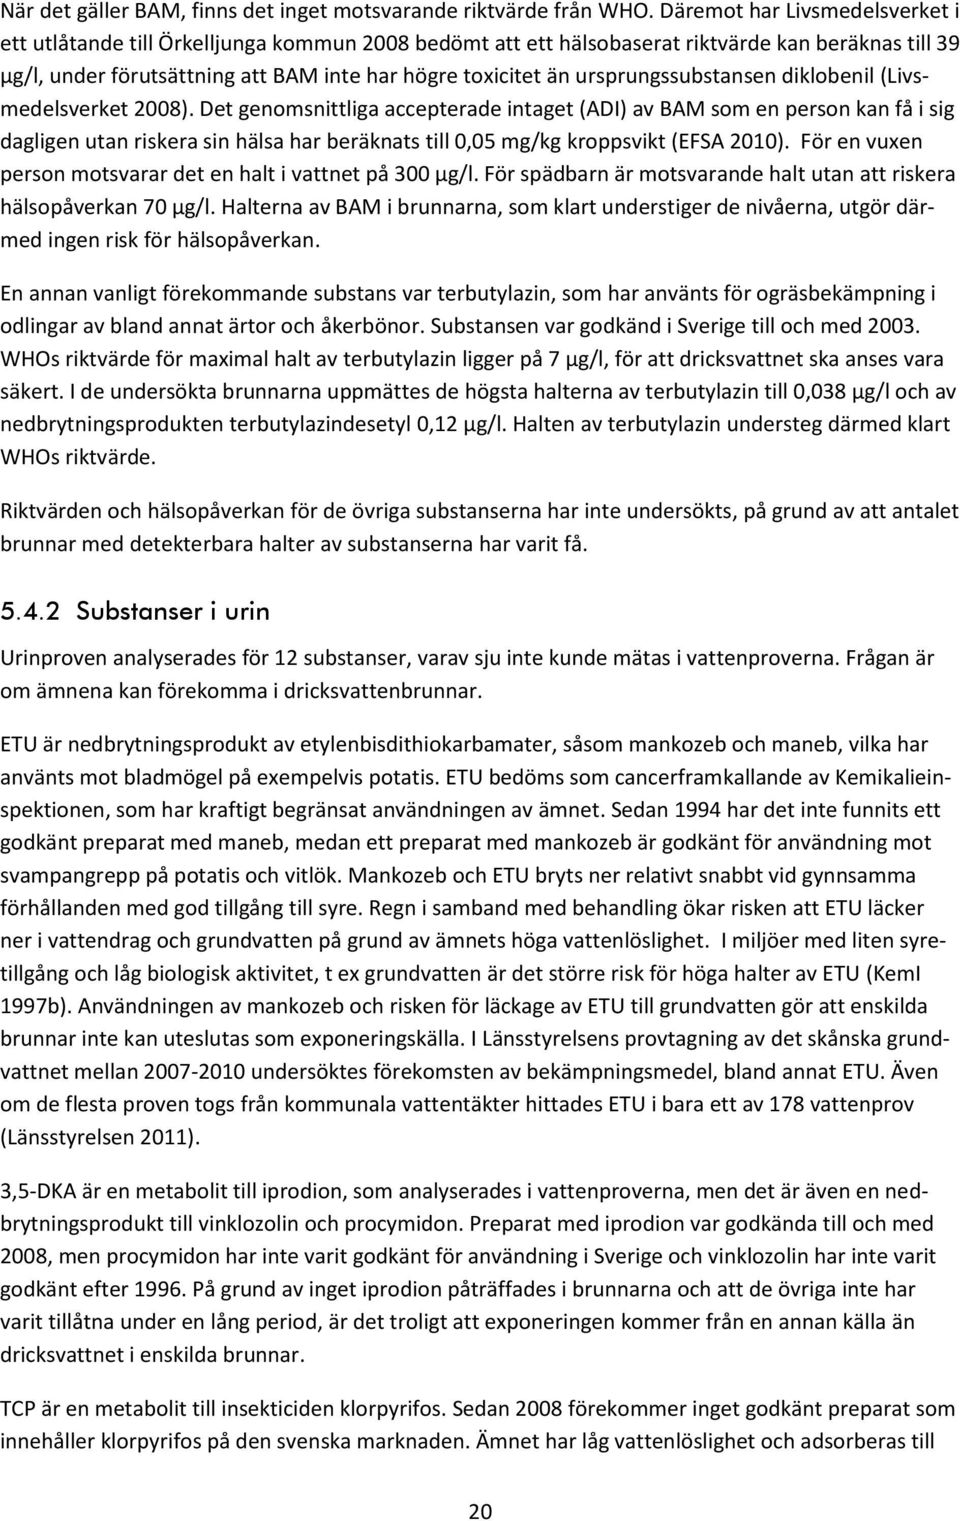 ursprungssubstansen diklobenil (Livsmedelsverket 2008).